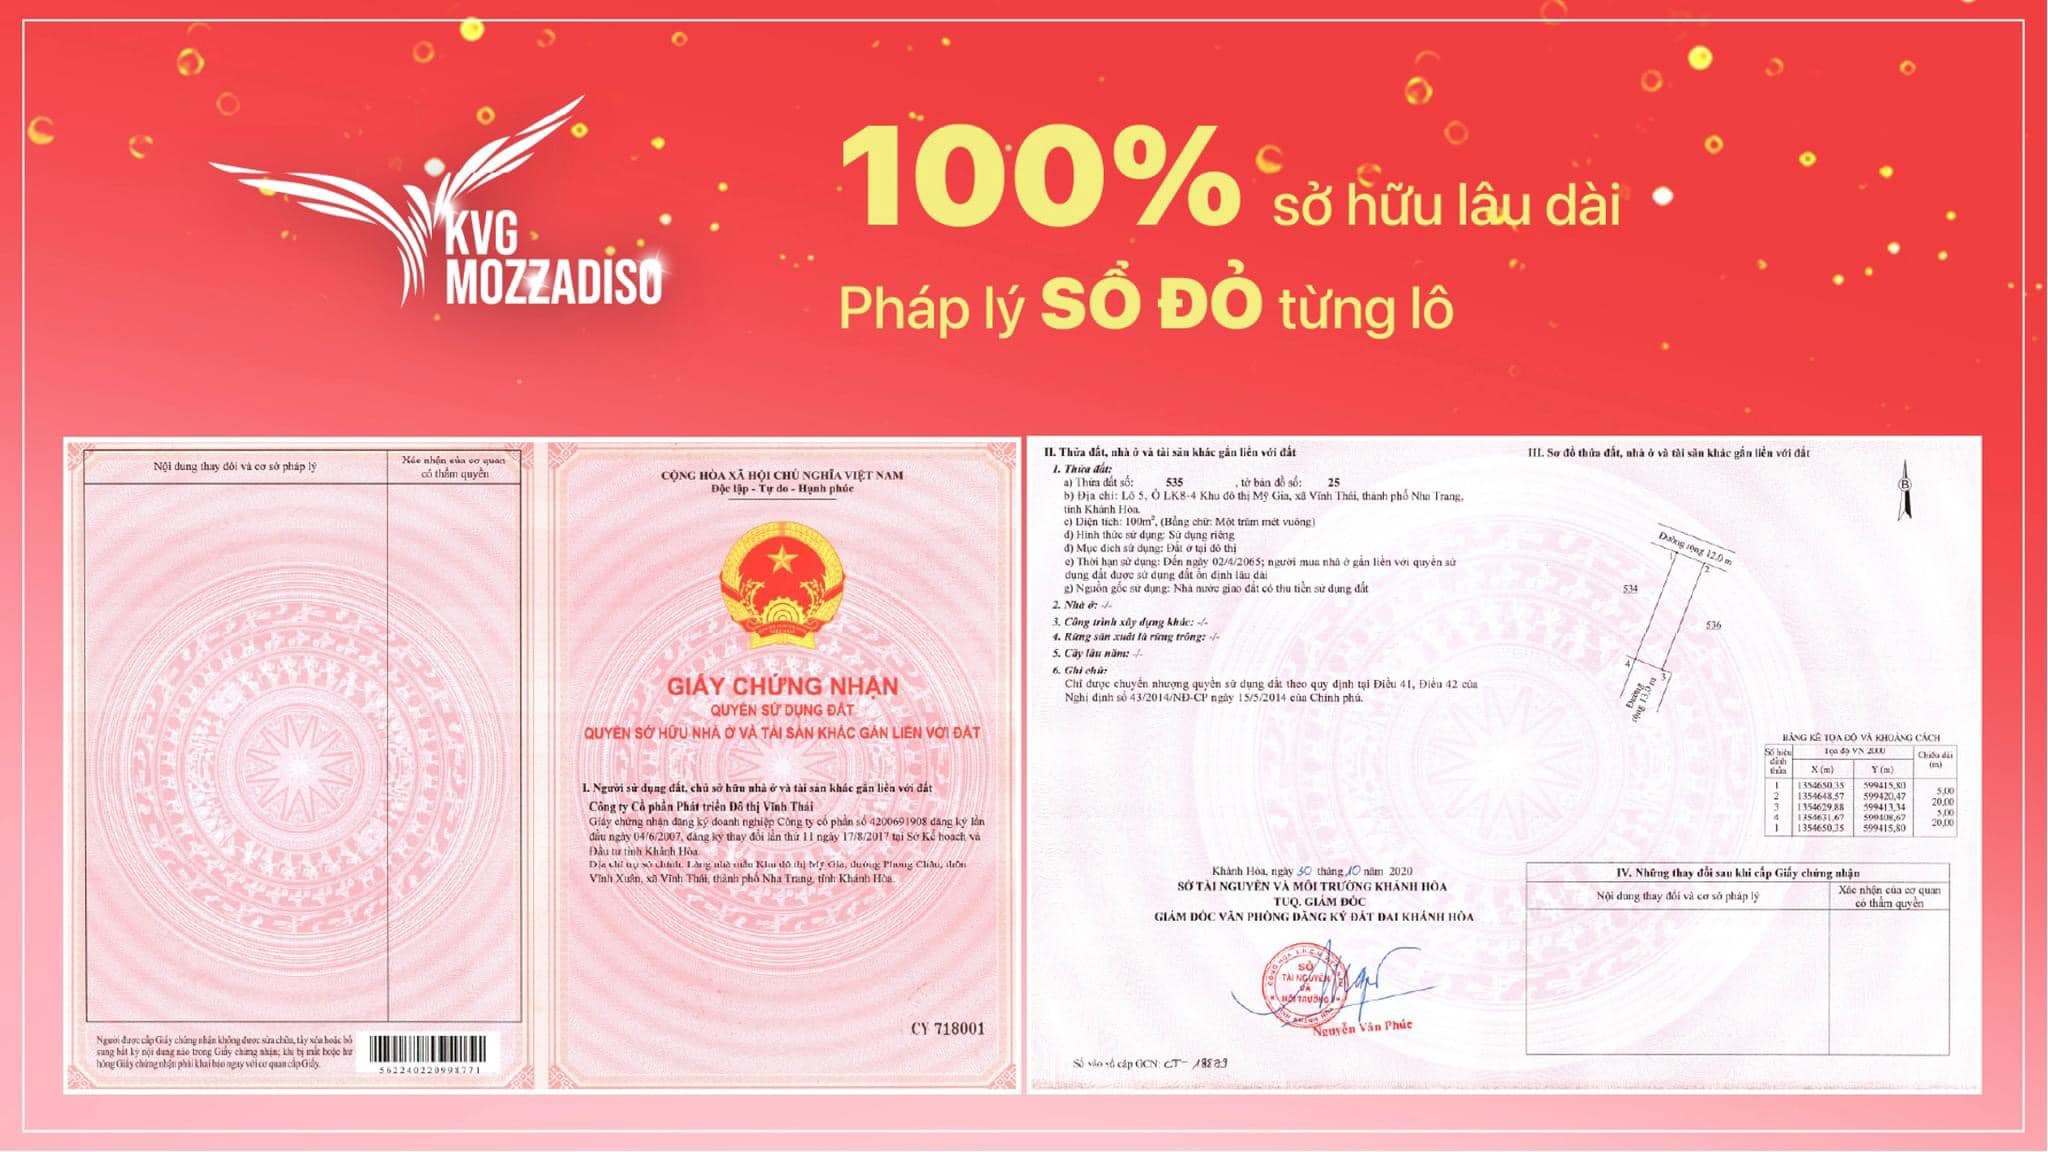 Mozzadiso Nha Trang 100% Sổ đỏ lâu dài, TP Nha Trang đô thị loại 1